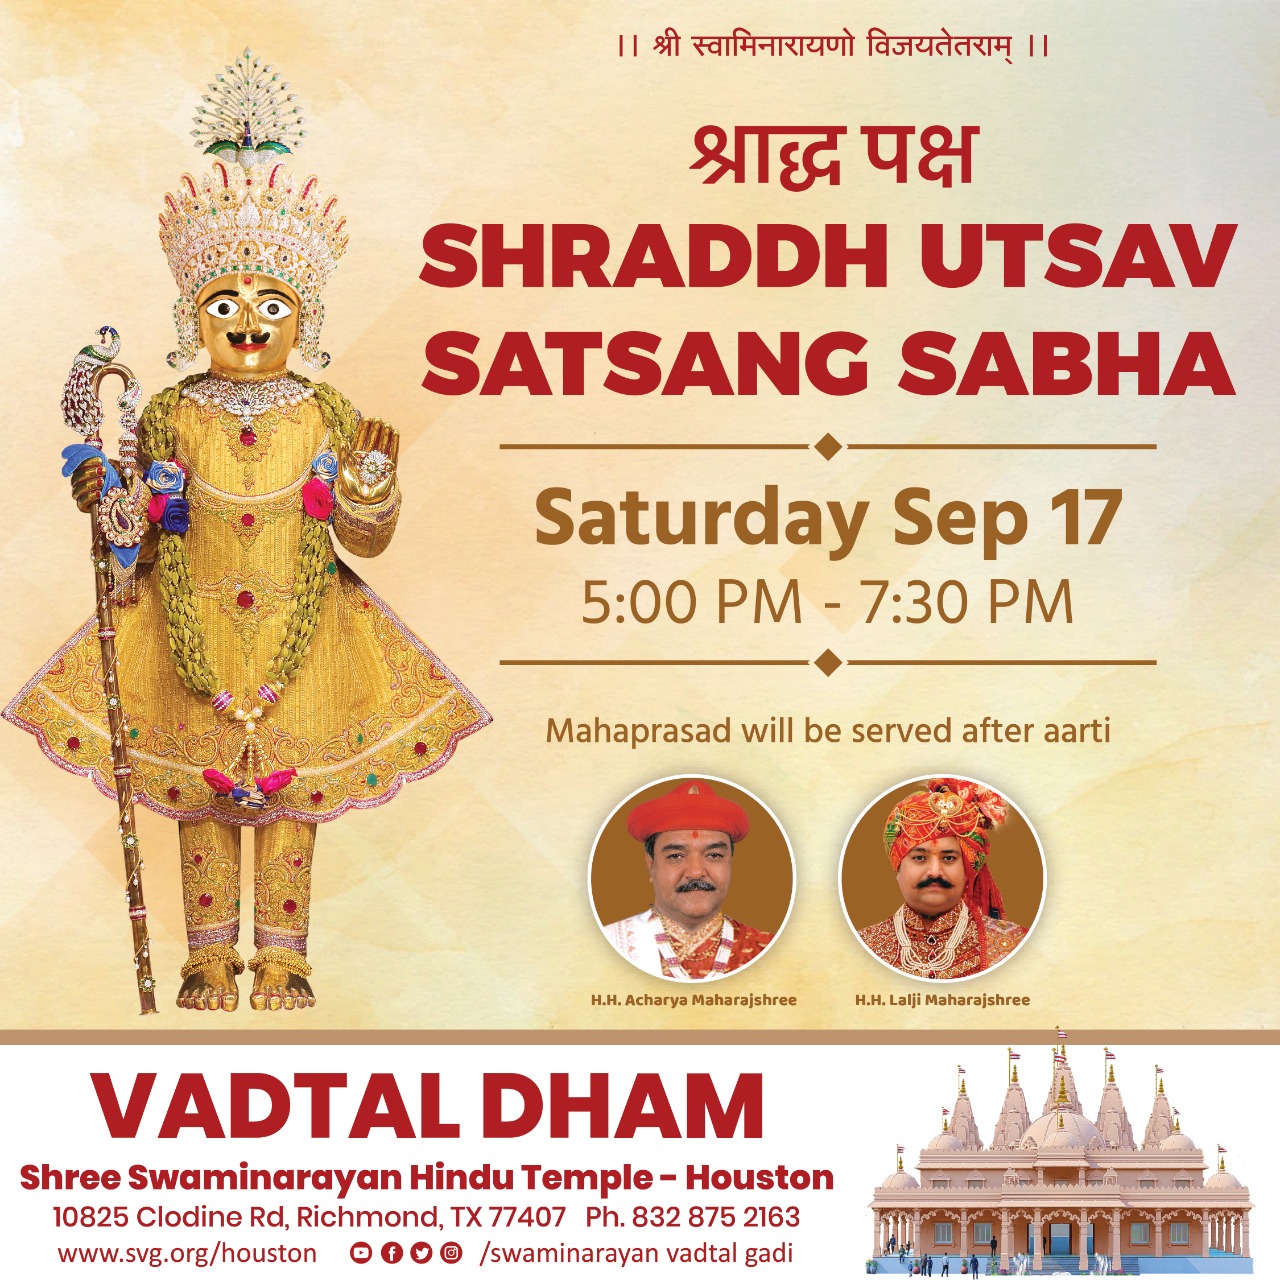 Swaminarayan Vadtal Gadi, Shraddh-Utsav-Satsang-Sabha.jpg